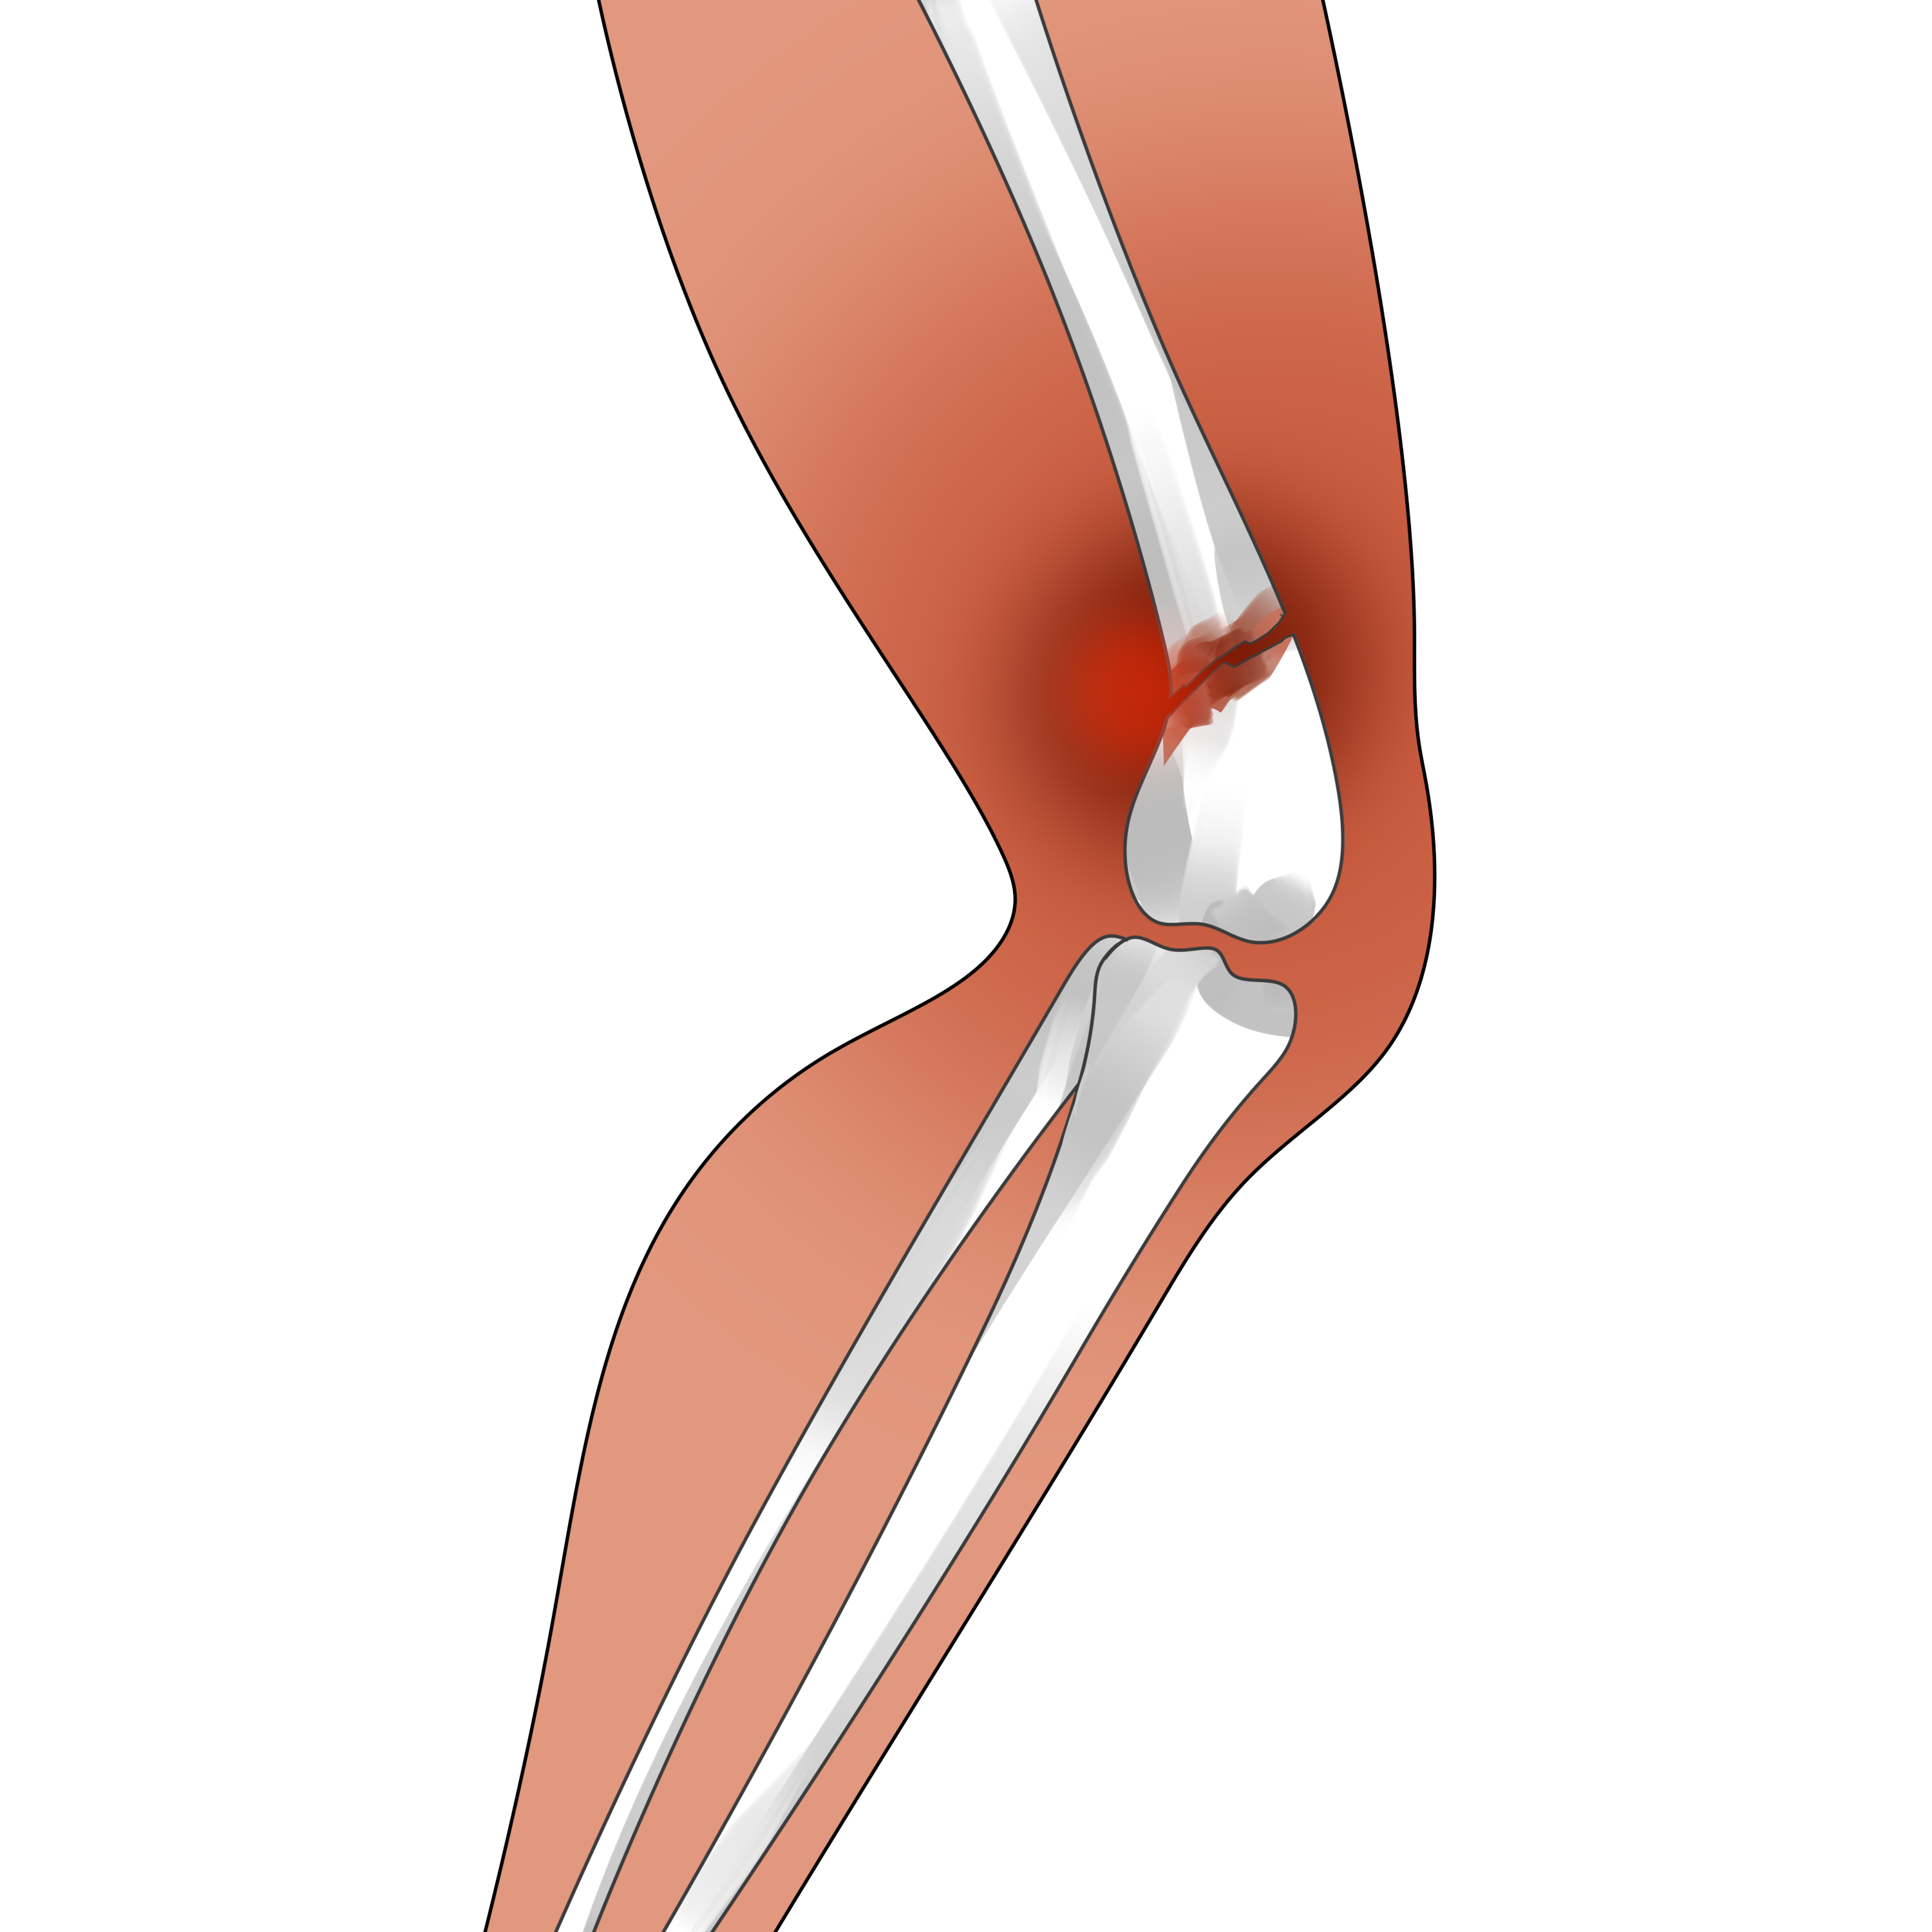 全膝关节假体系统产品注册技术审查指导原则